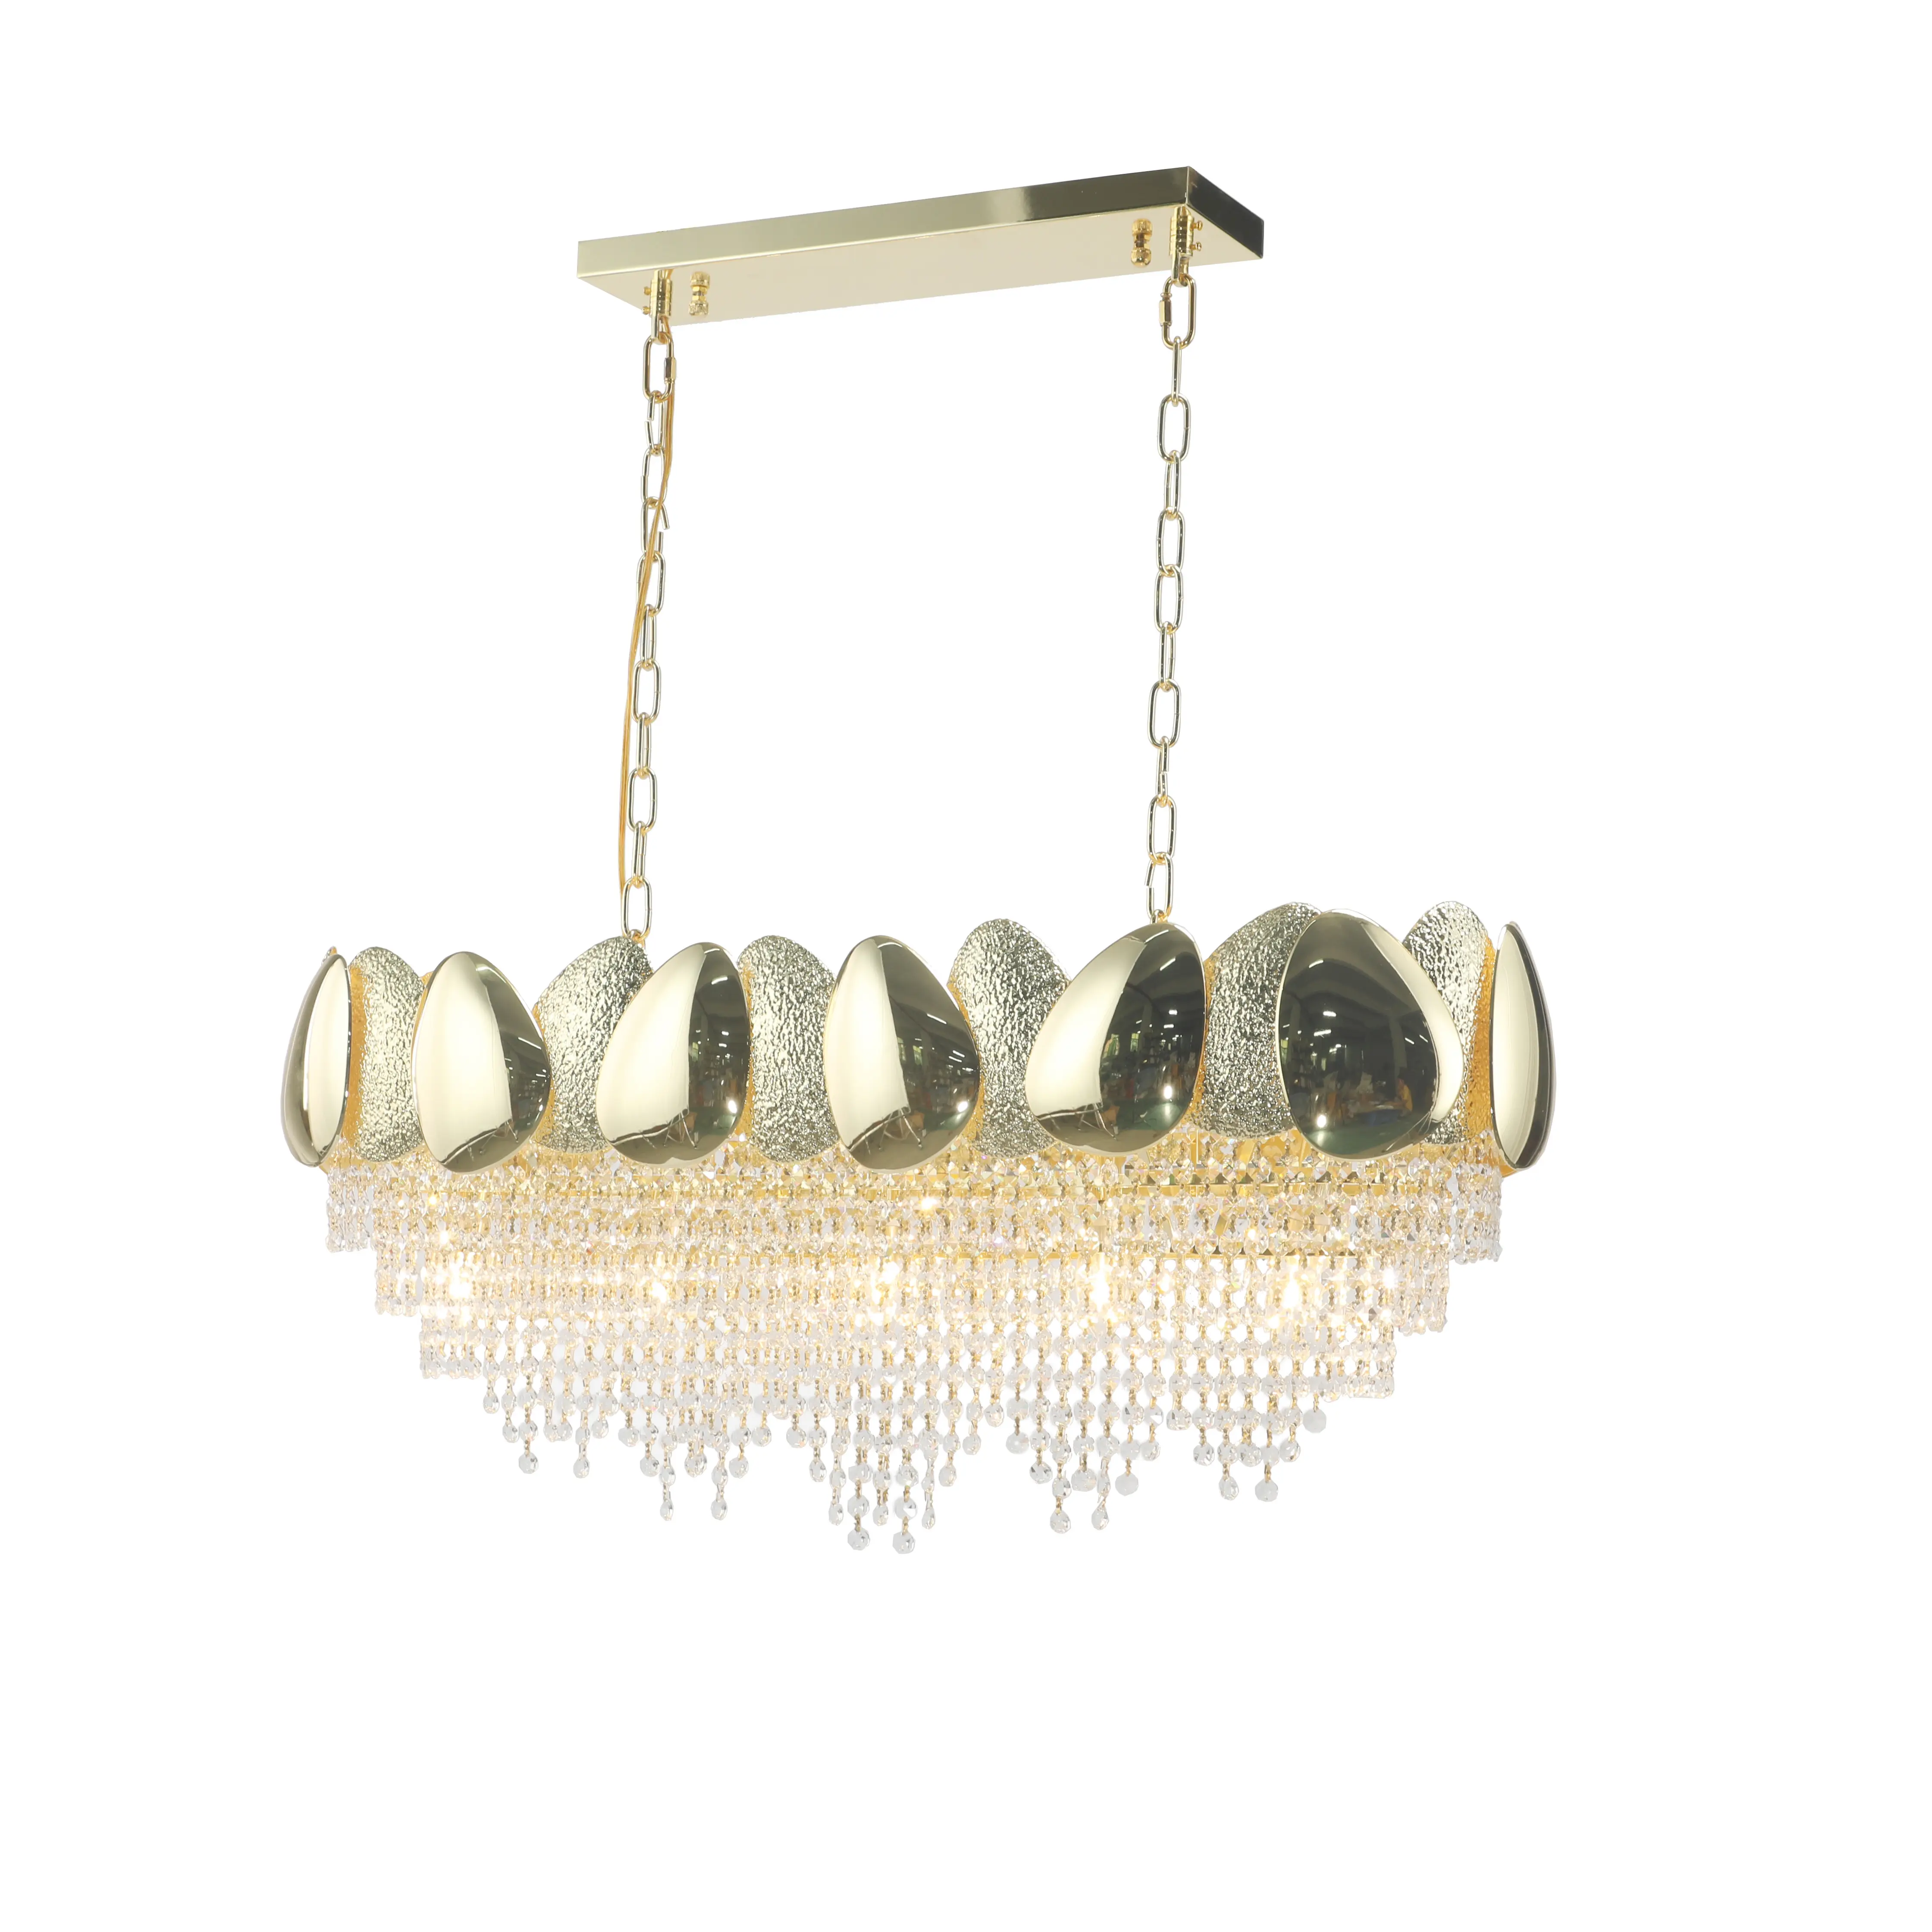 Lampu kristal dapur pulau cahaya dengan bayangan telur emas kreatif